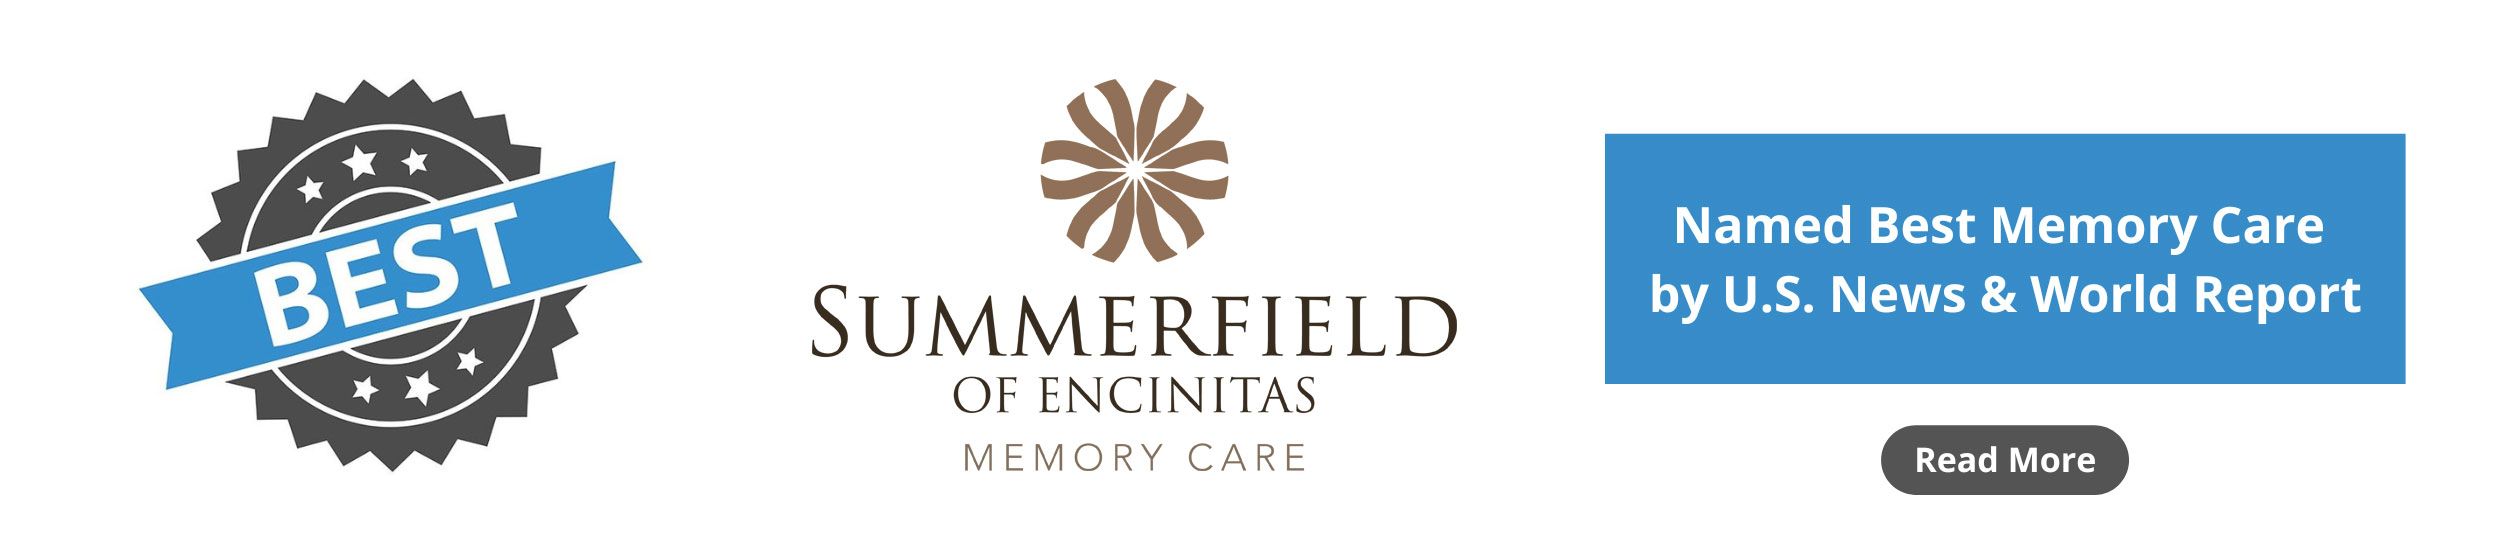 Summerfield of Encinitas_Best memory care by U.S. News & World Report